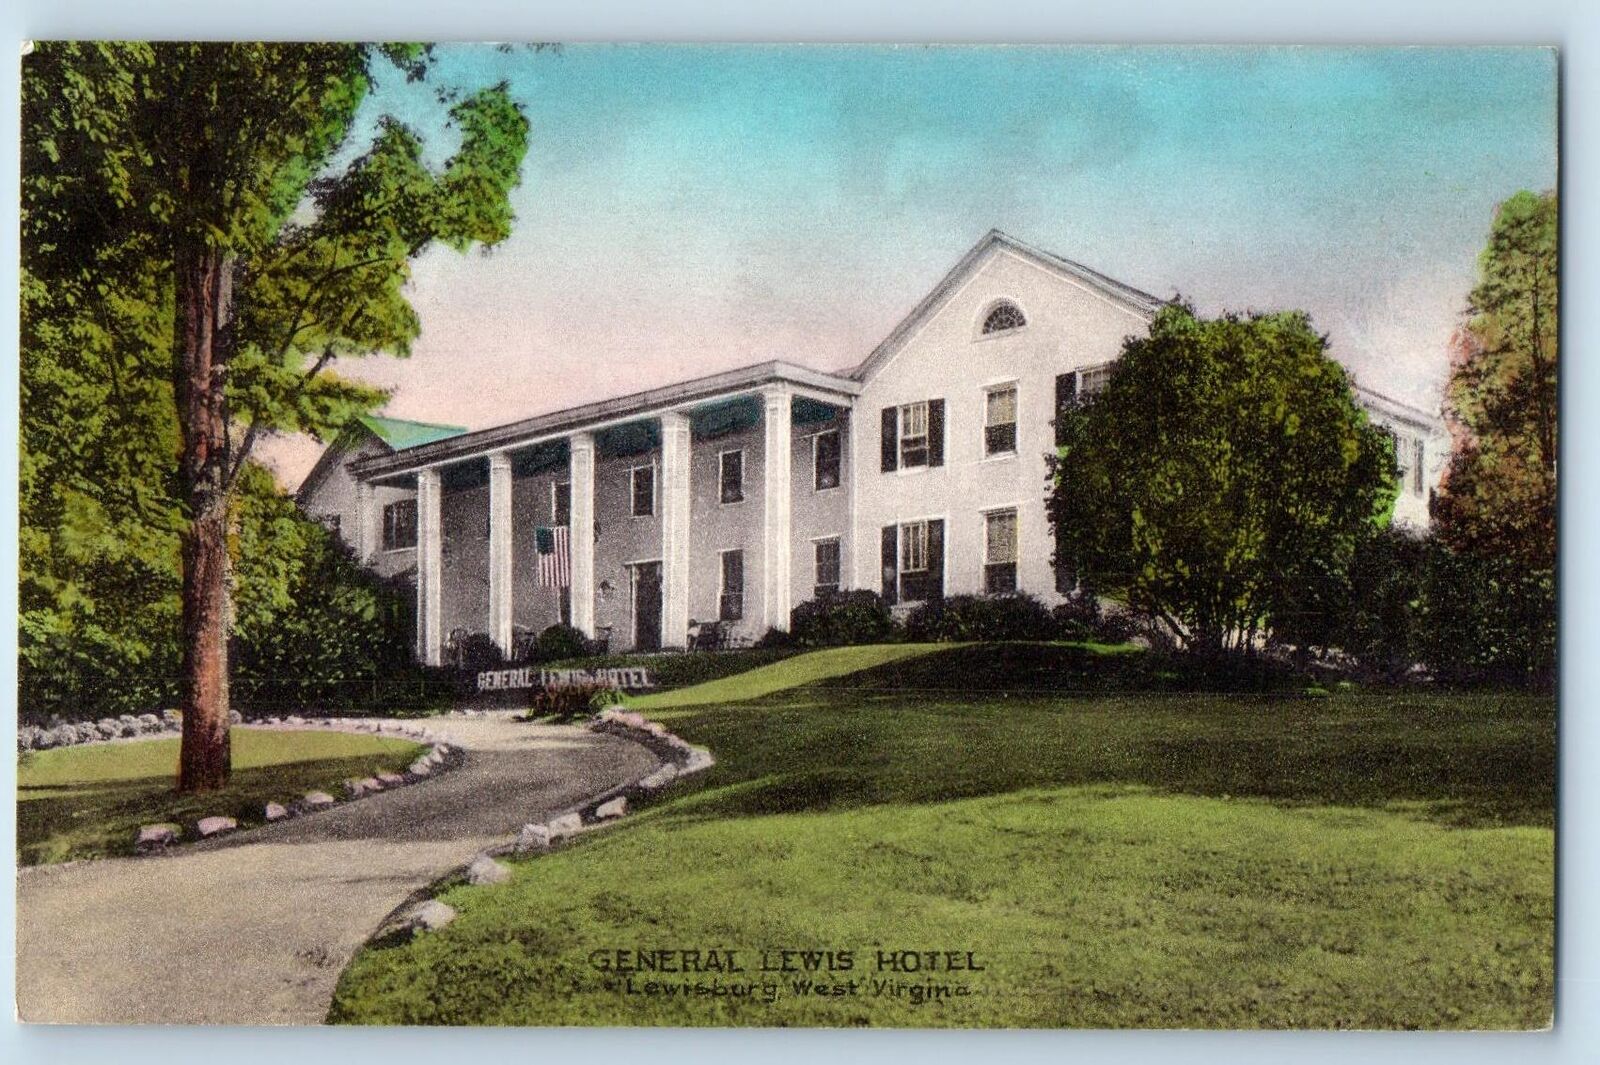 Lewisburg West Virginia Postcard The General Lewis Hotel Exterior c1940s Vintage